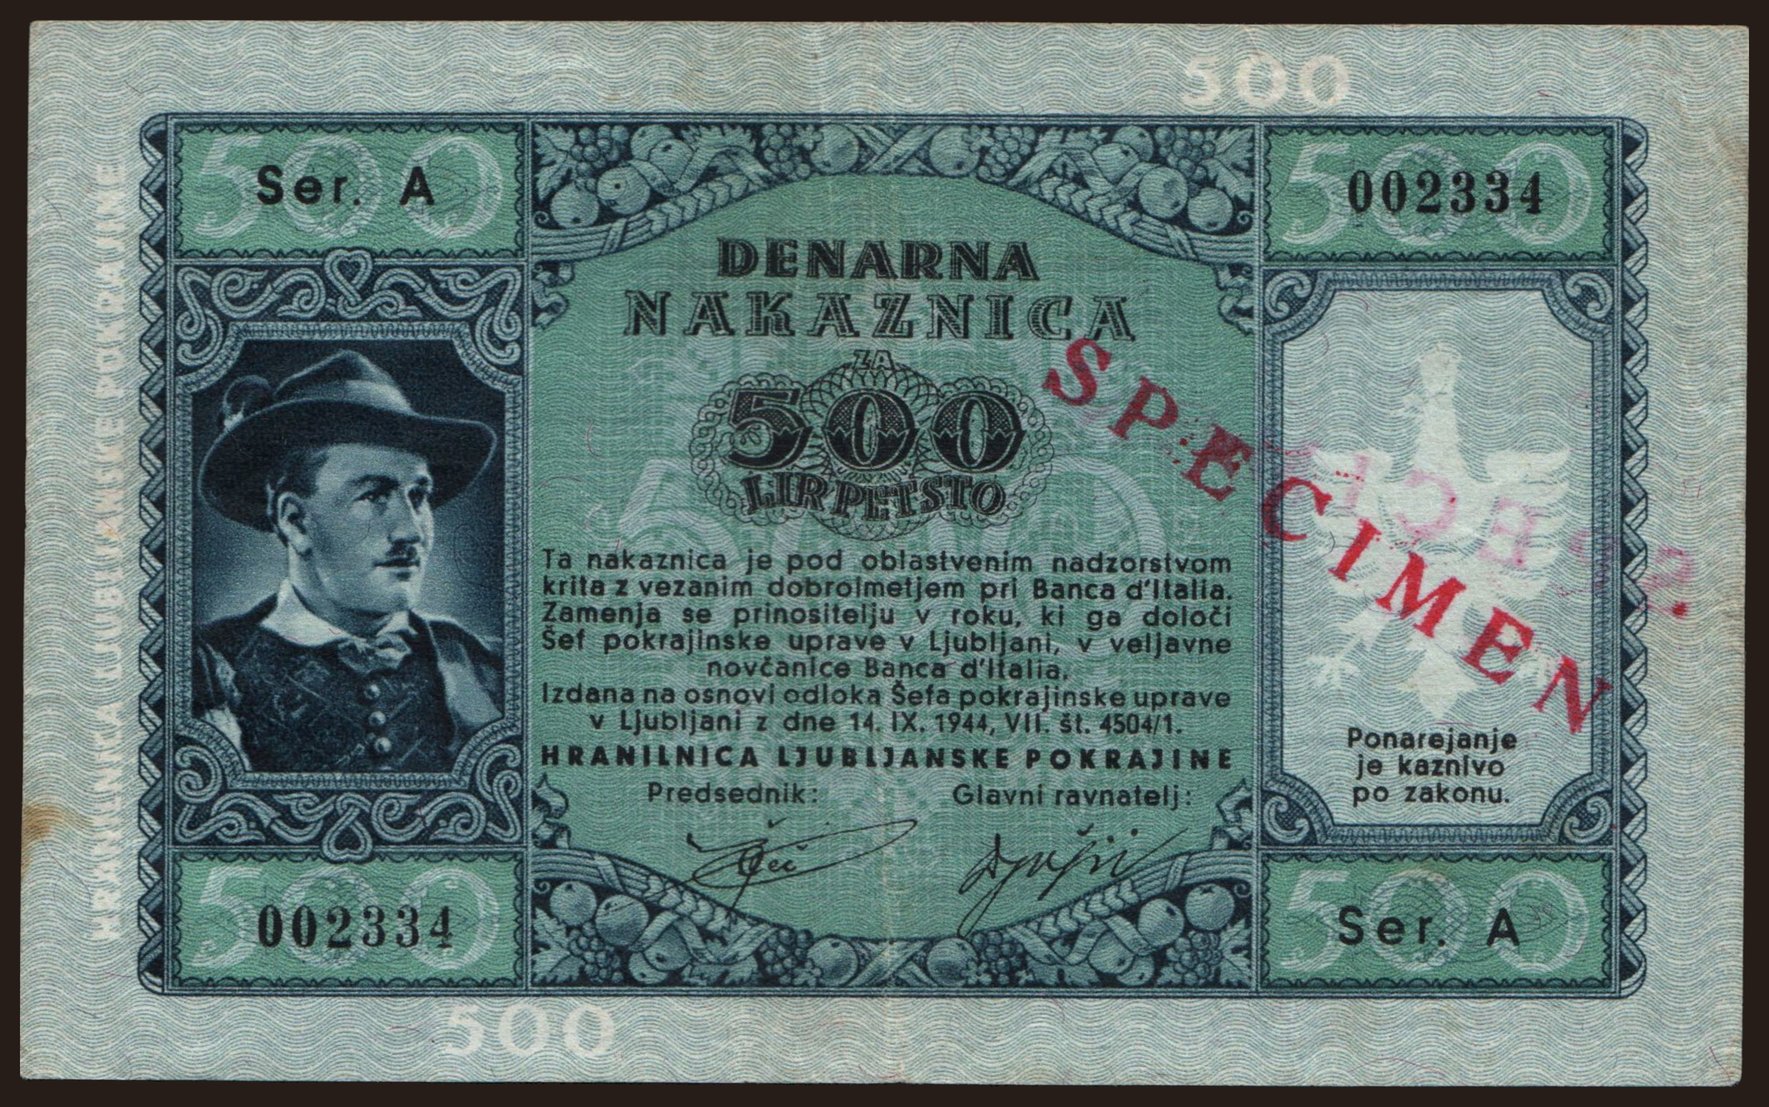 Laibach, 500 lire, 1944, SPECIMEN